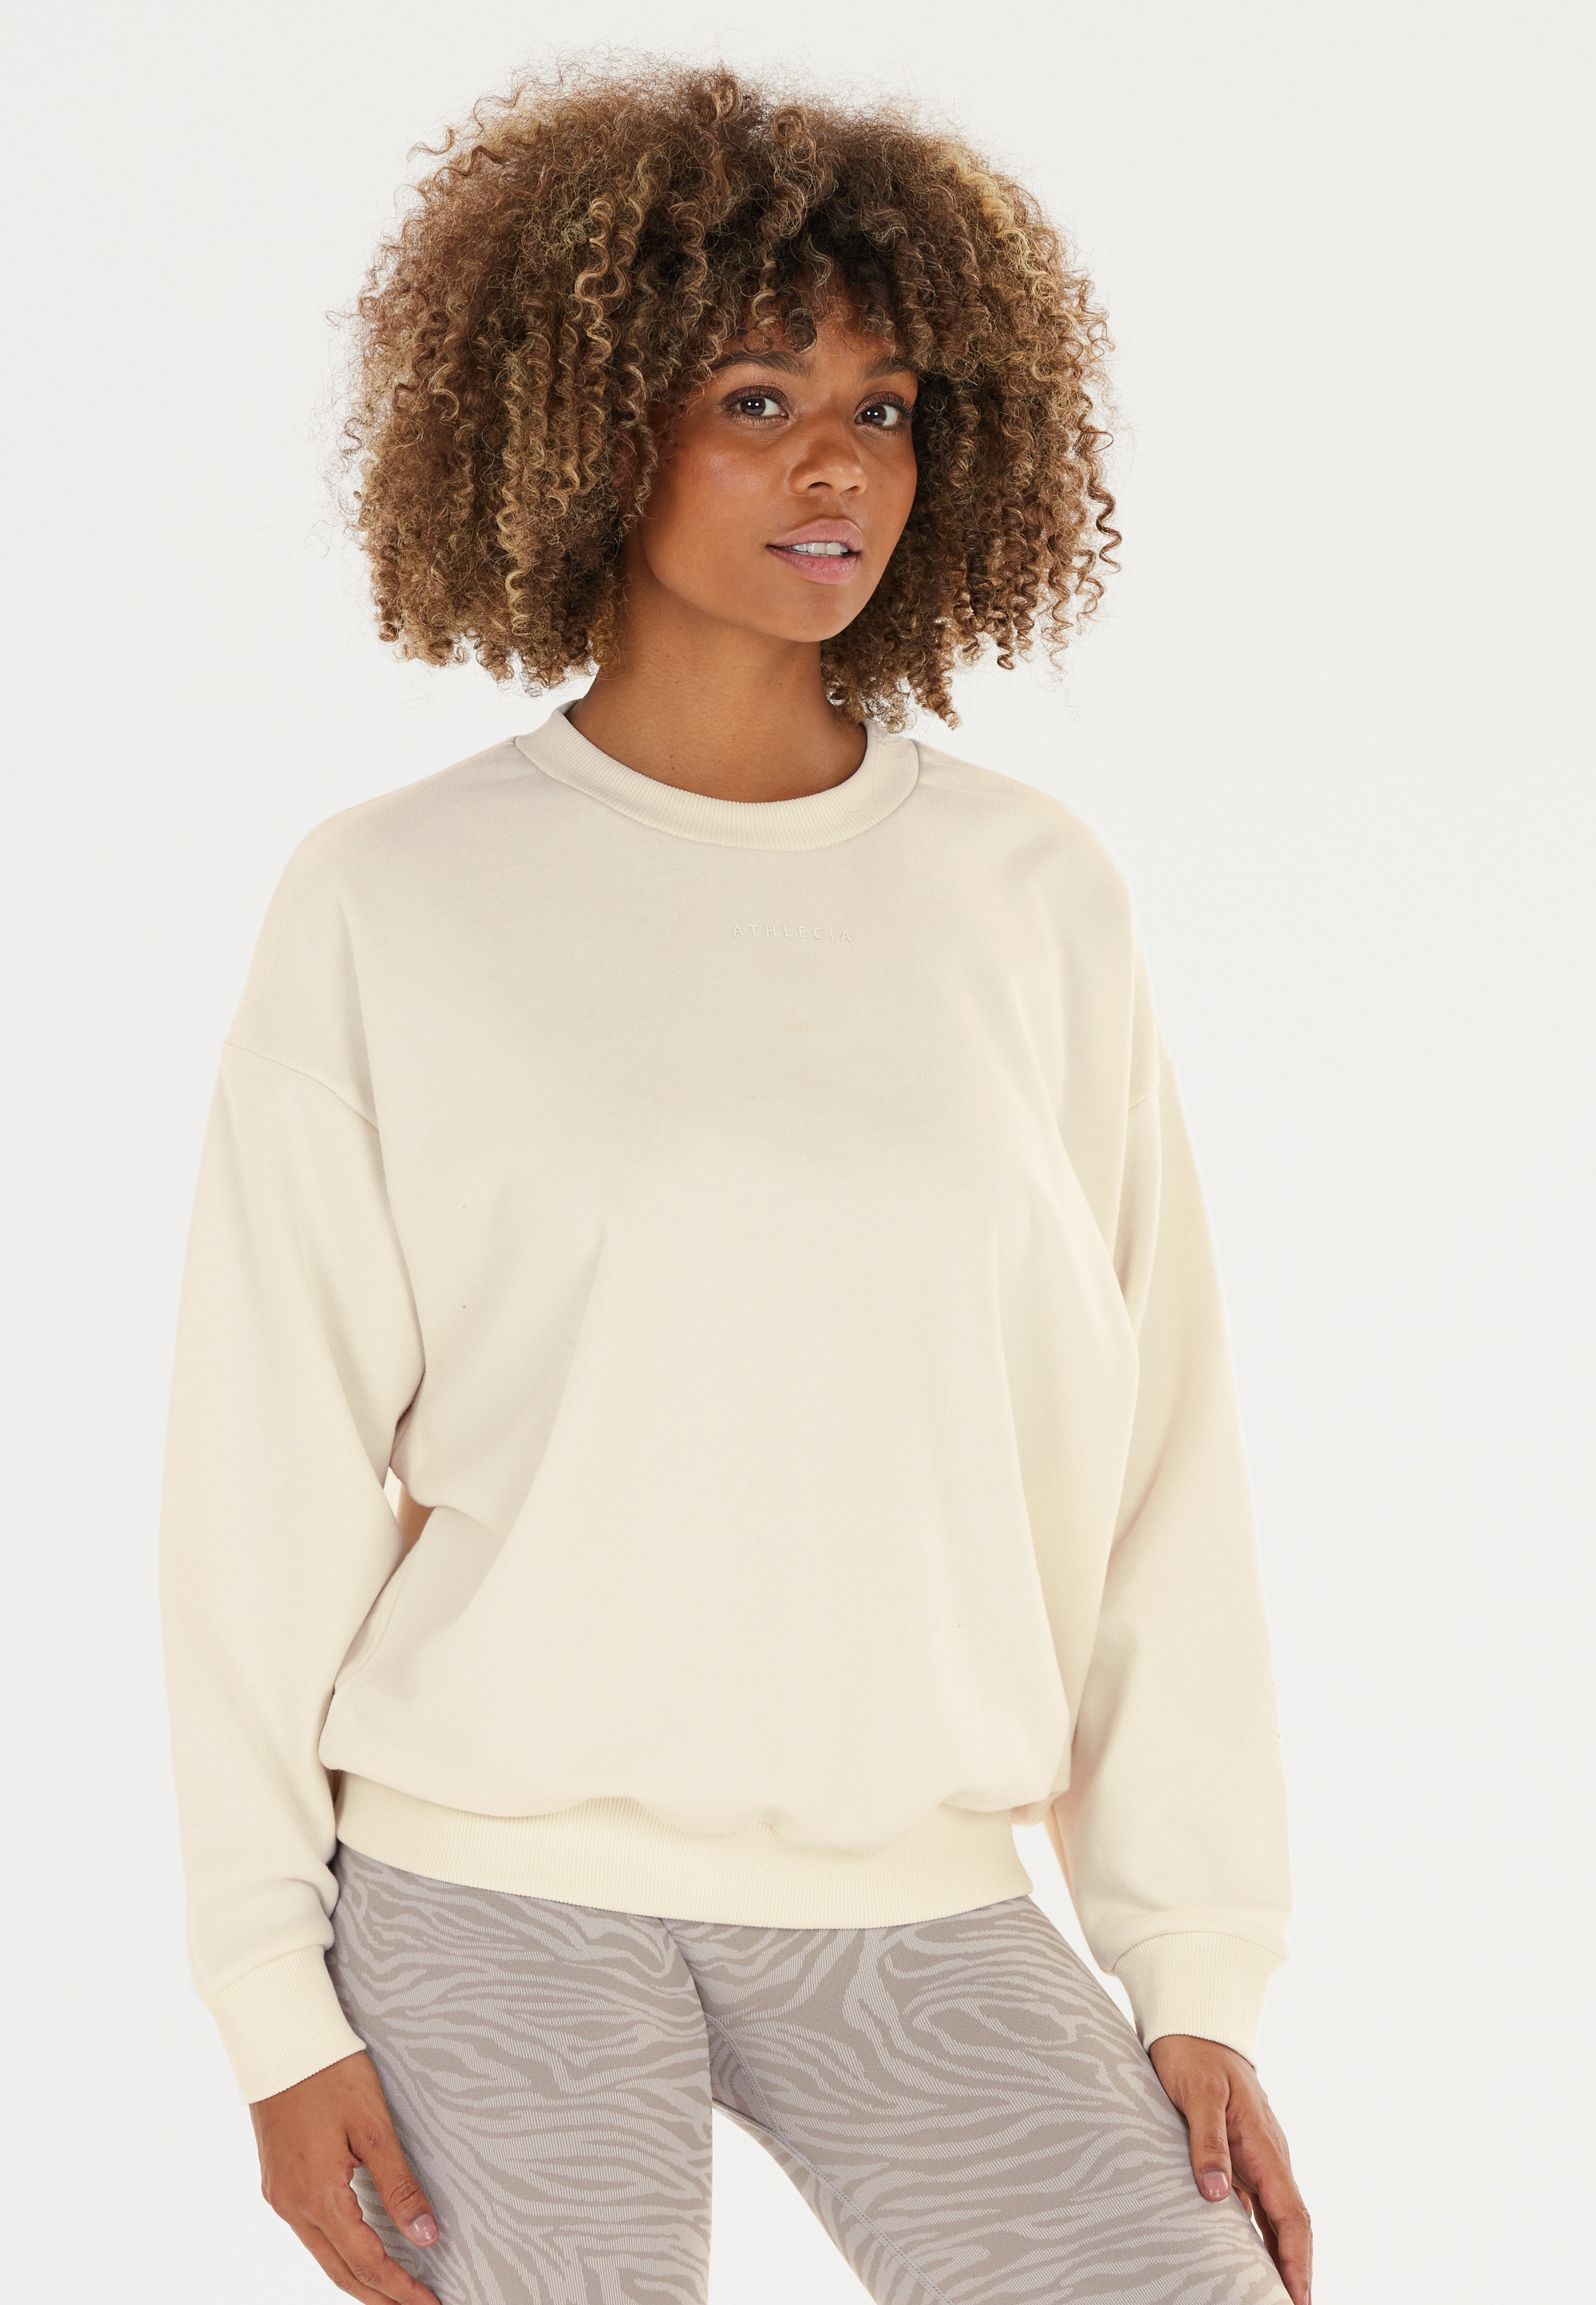 ATHLECIA Sweatshirt »Naomi«, im besonders weichen Crewneck-Style